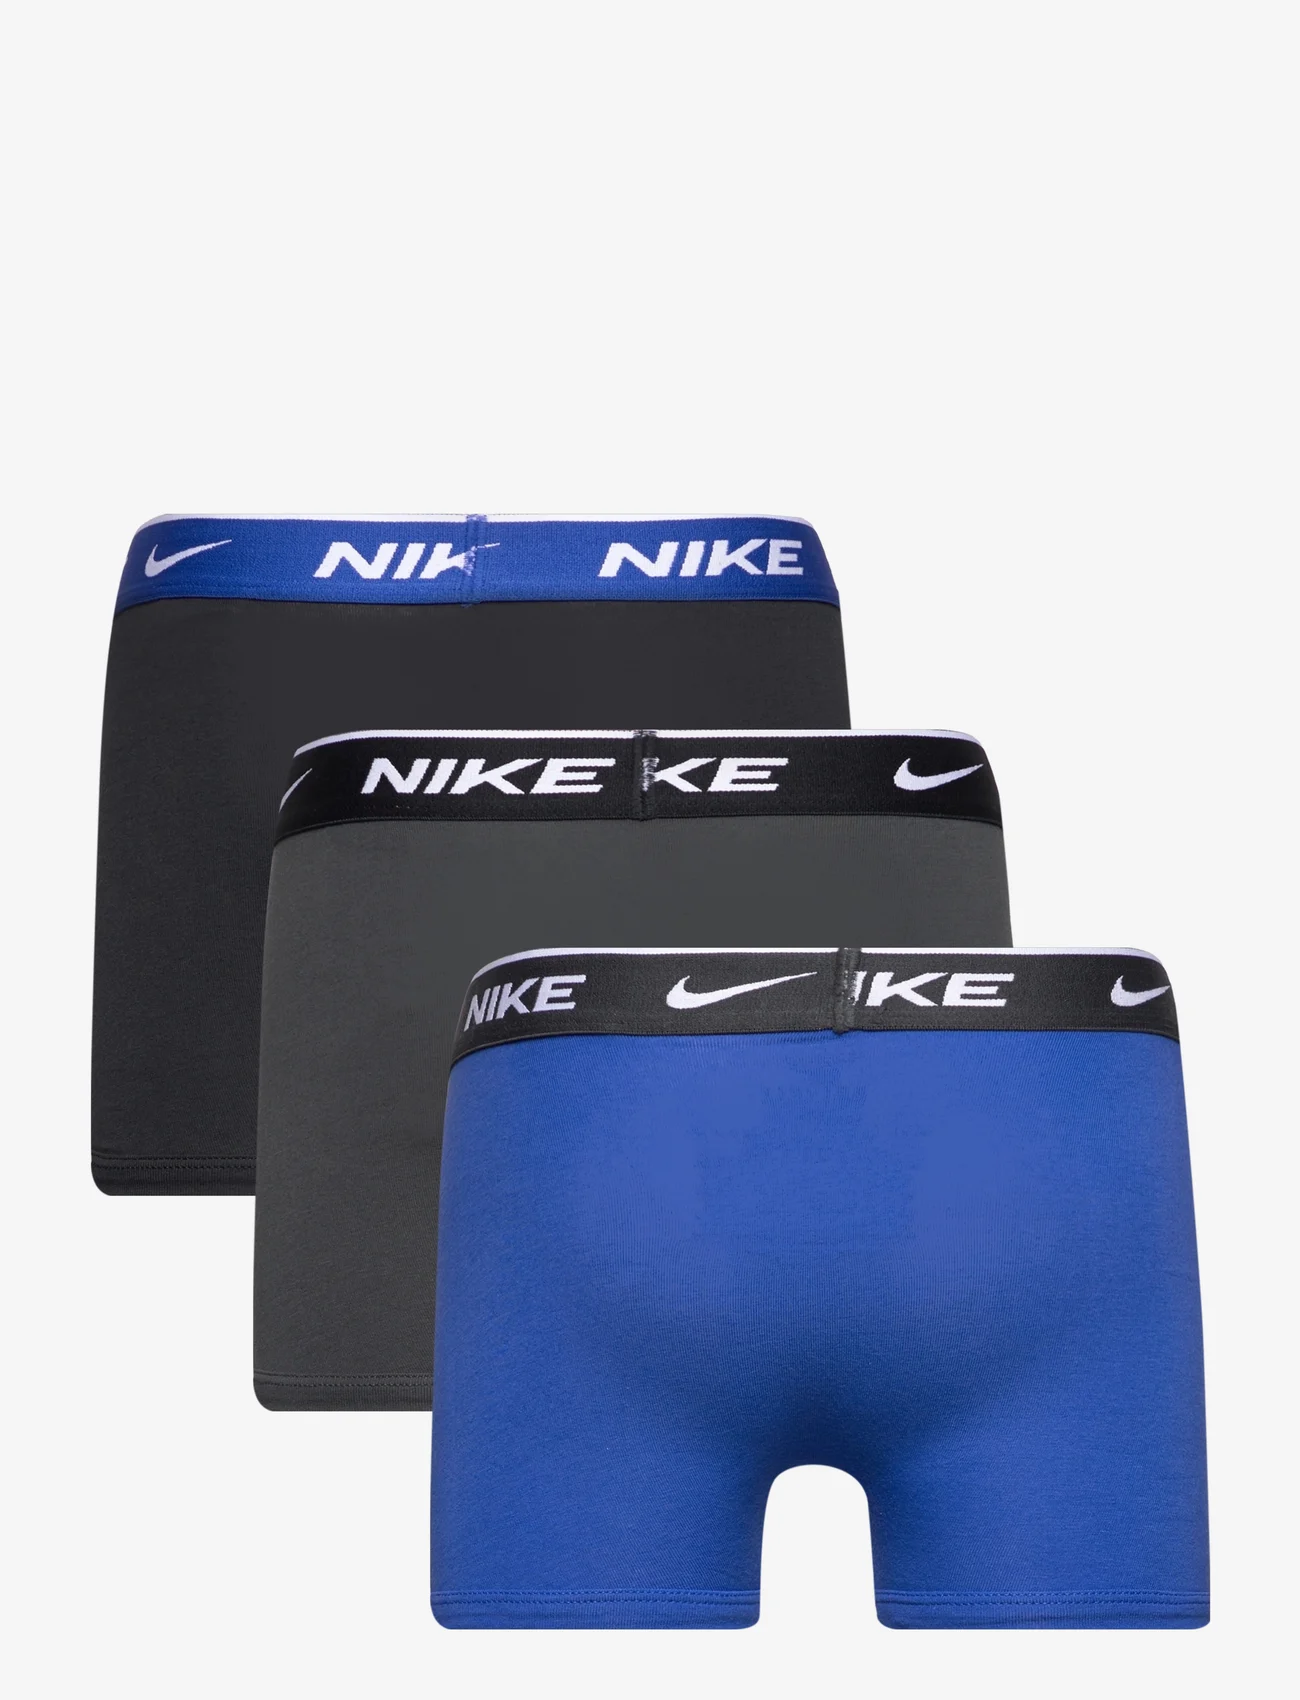 Nike - NHB NHB E DAY COTTON STRETCH 3 / NHB NHB E DAY COTTON STRETC - underbukser - game royal - 1